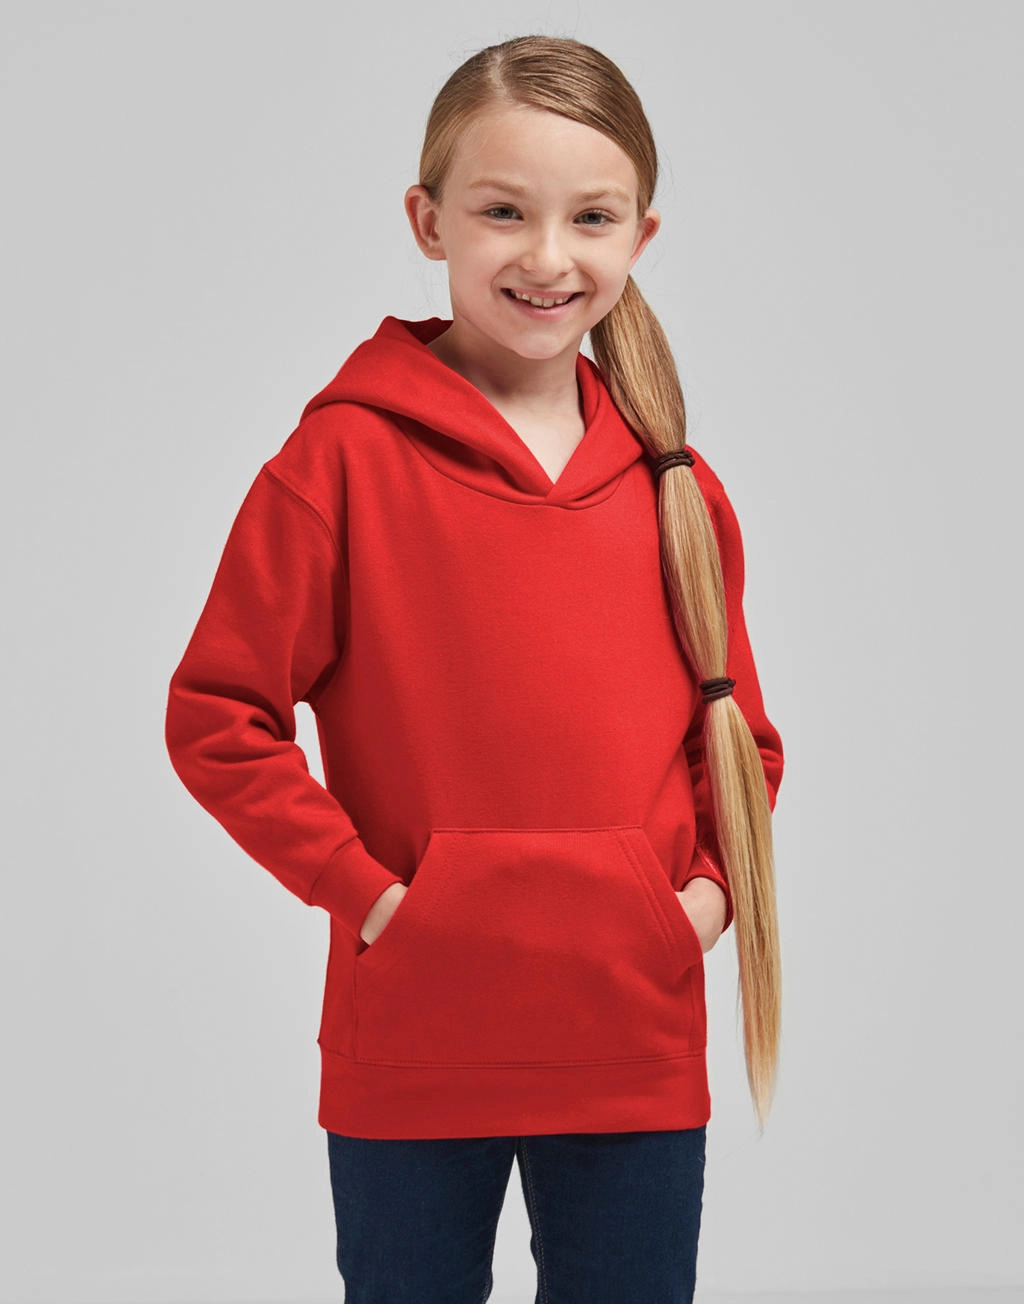 Hooded Sweatshirt Kids zum Besticken und Bedrucken mit Ihren Logo, Schriftzug oder Motiv.